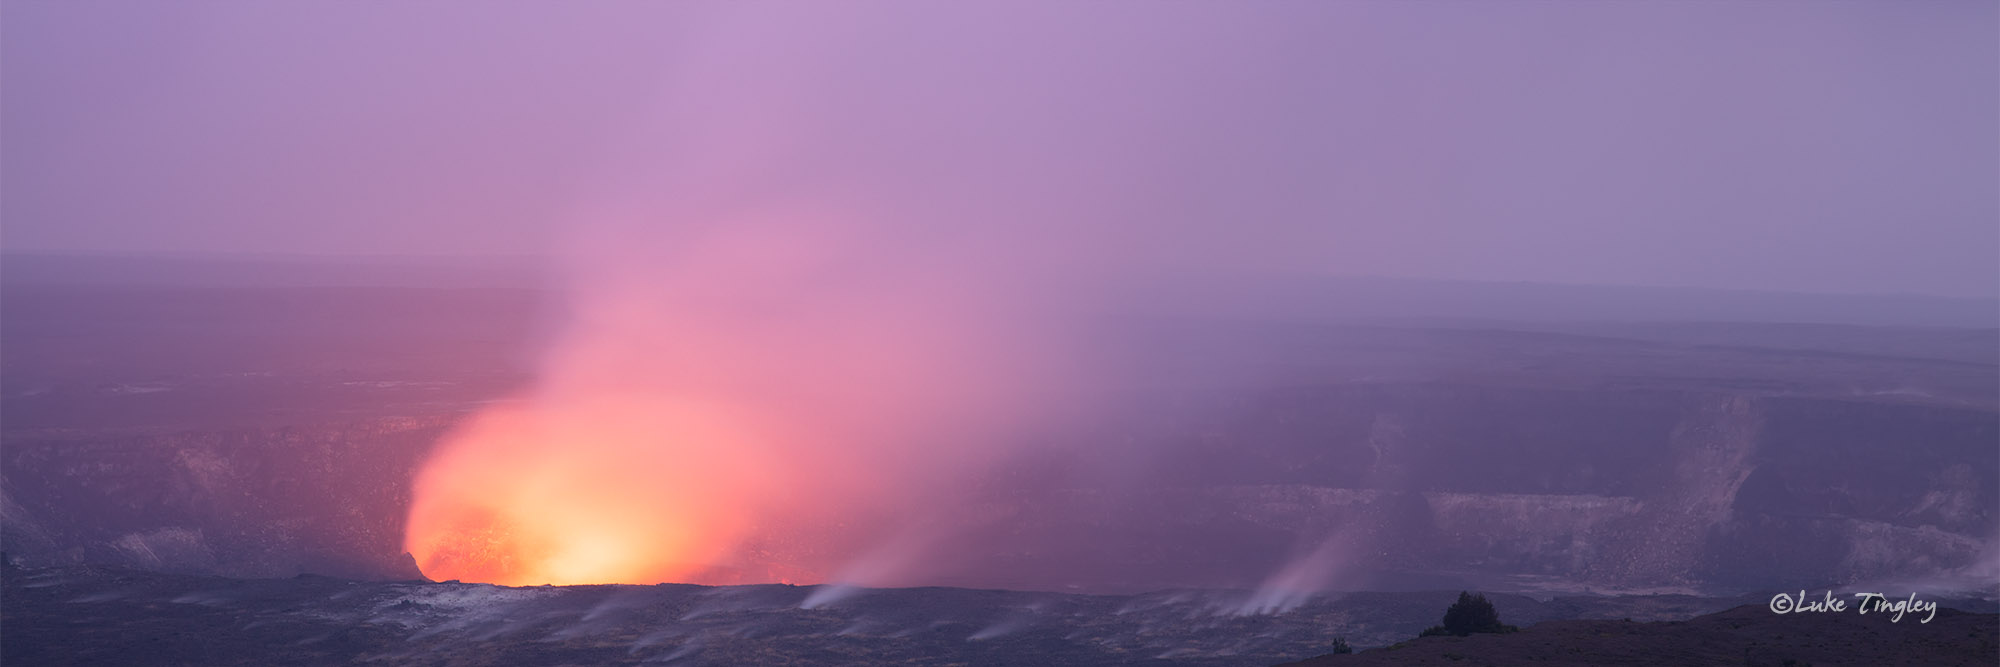 Sunset at Kilauea Crater.